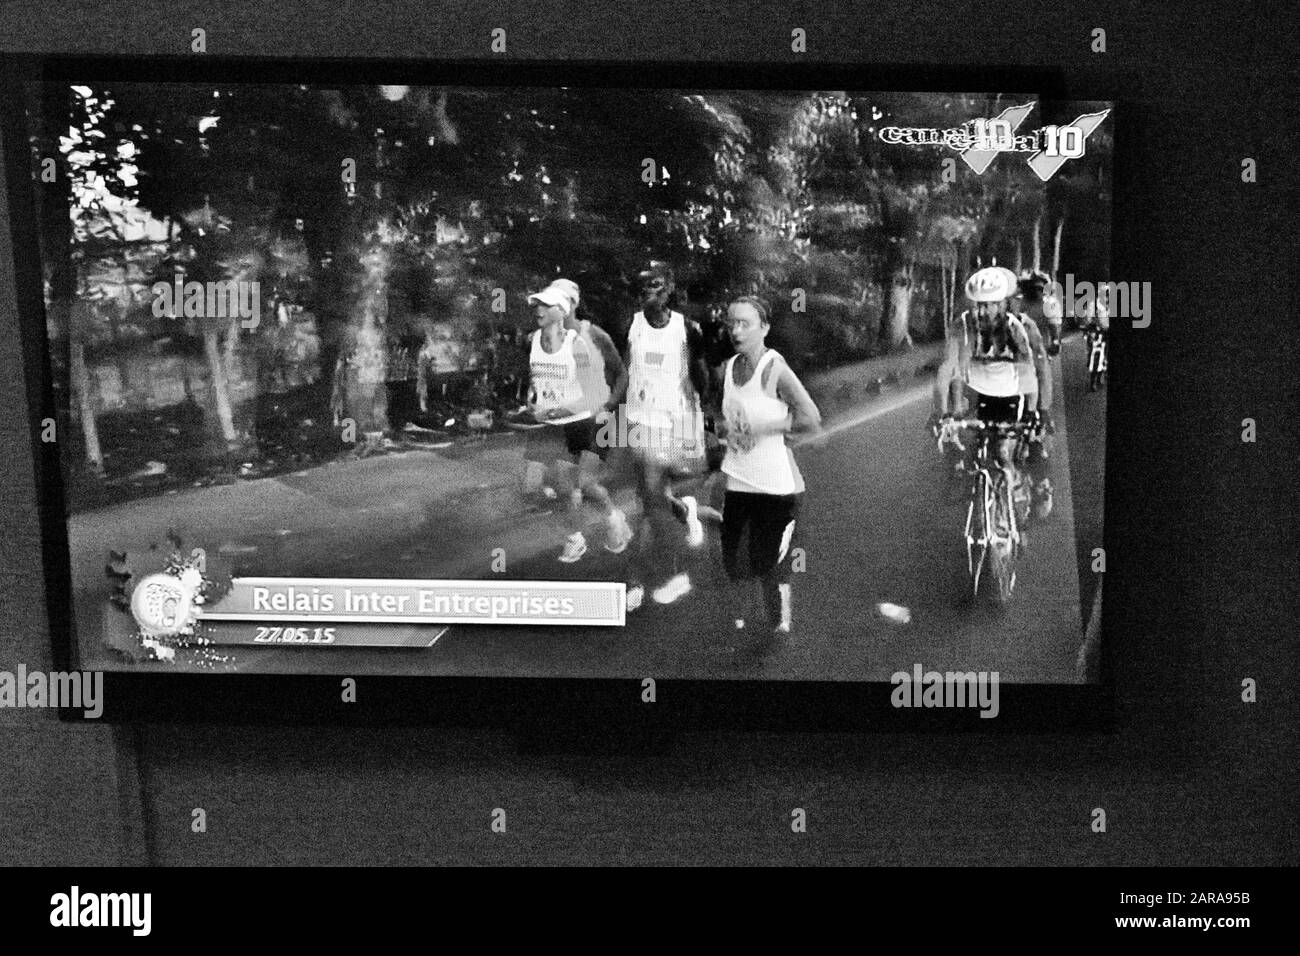 TV-News, Marathonläufer, Paris, Frankreich, Europa Stockfoto